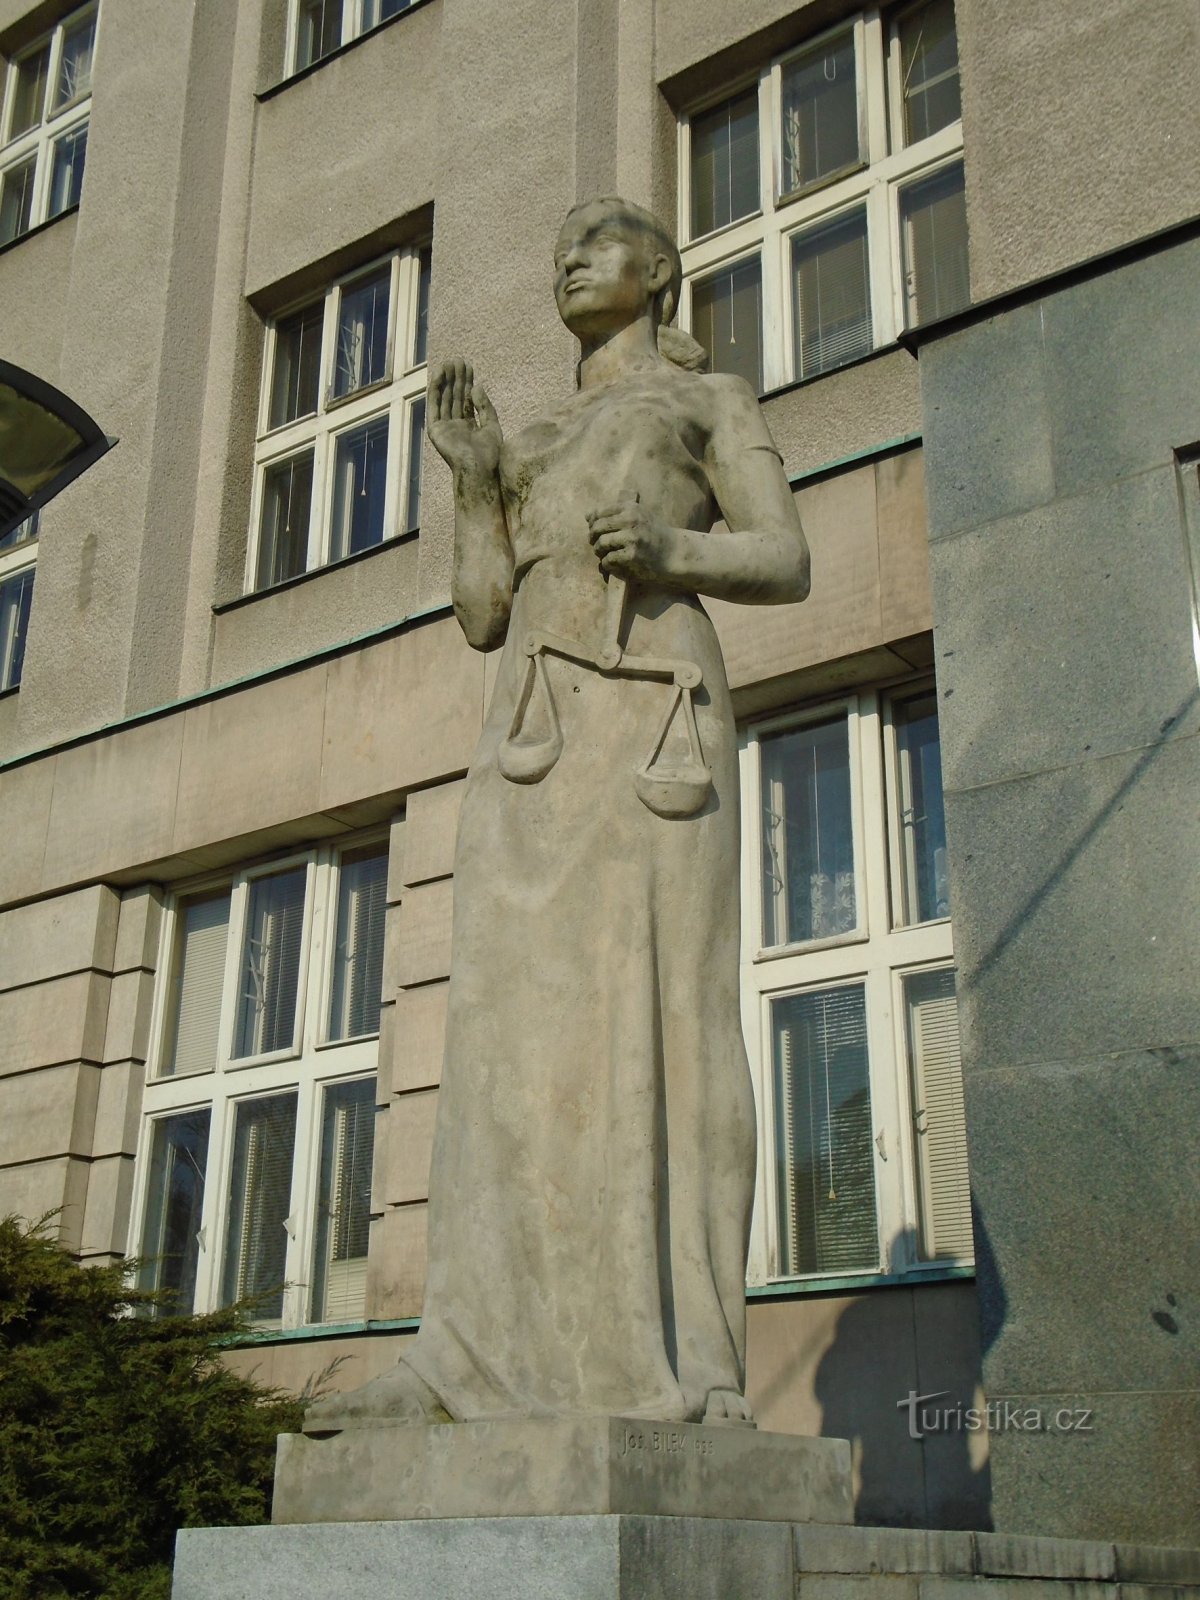 Igazságügyi szobor a regionális bíróság bejáratánál (Hradec Králové, 1.4.2018. április XNUMX.)